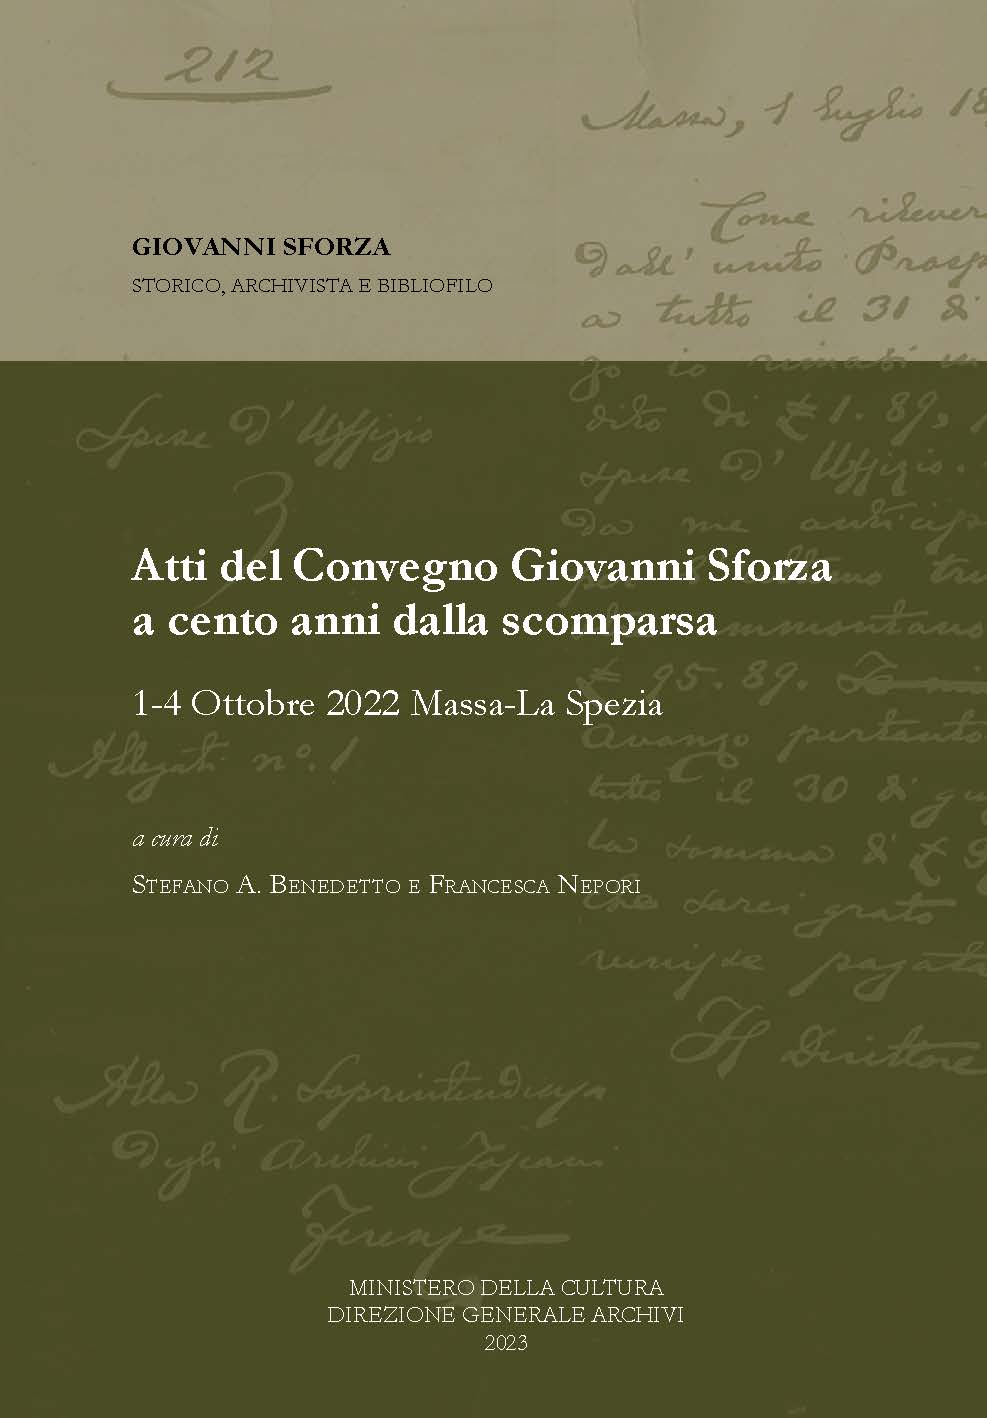 Giovanni Sforza storico, archivista e bibliofilo